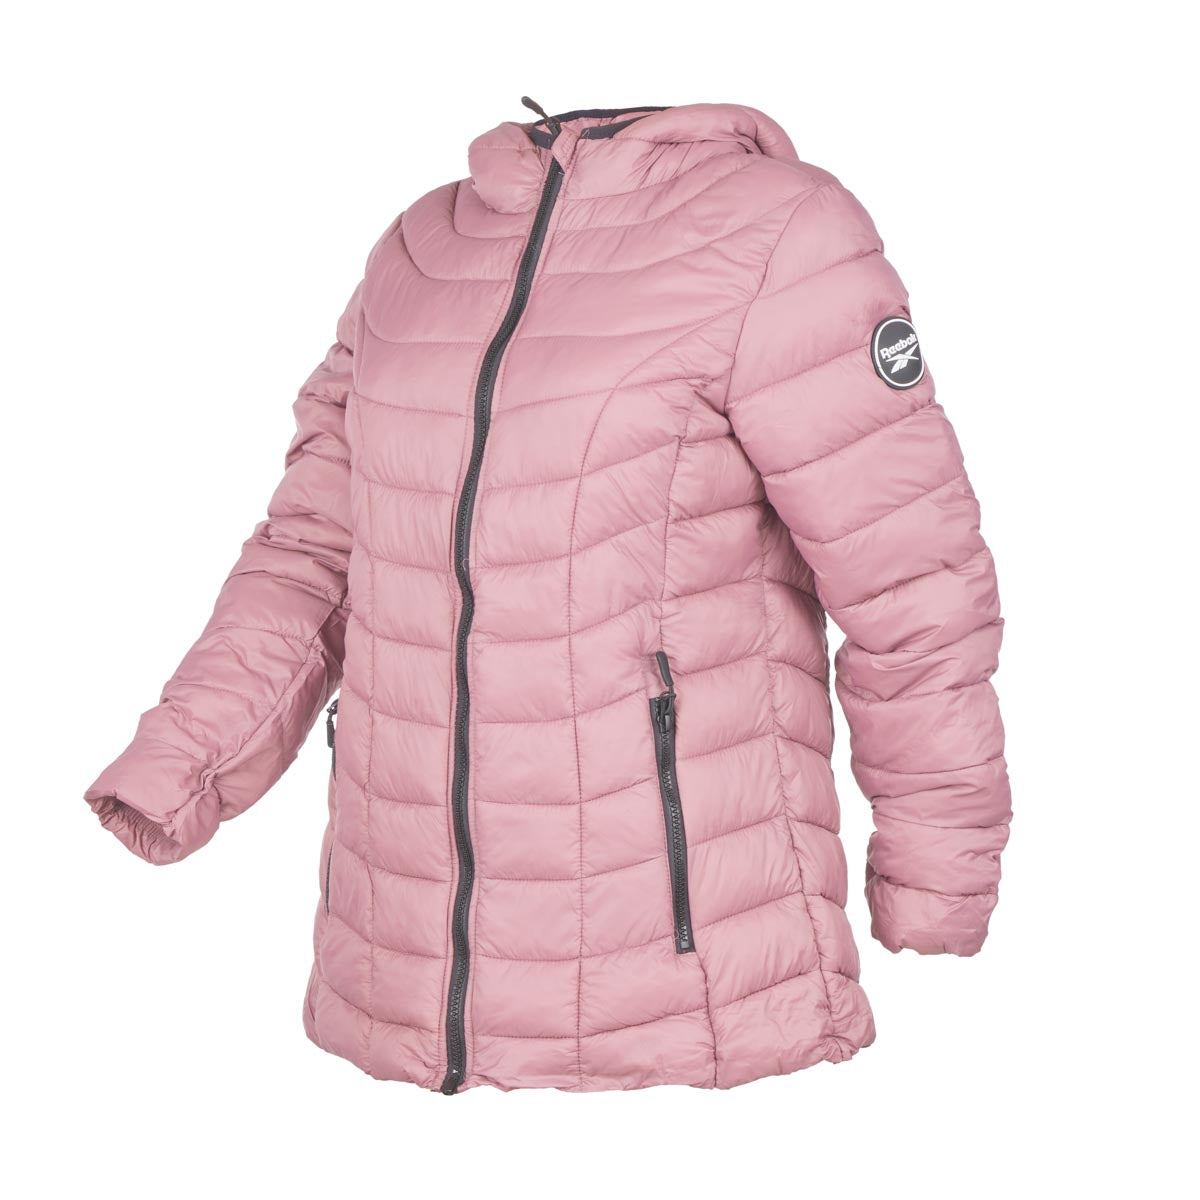 Reebok Women's Glacier Shield Jacket with Hood – PROOZY